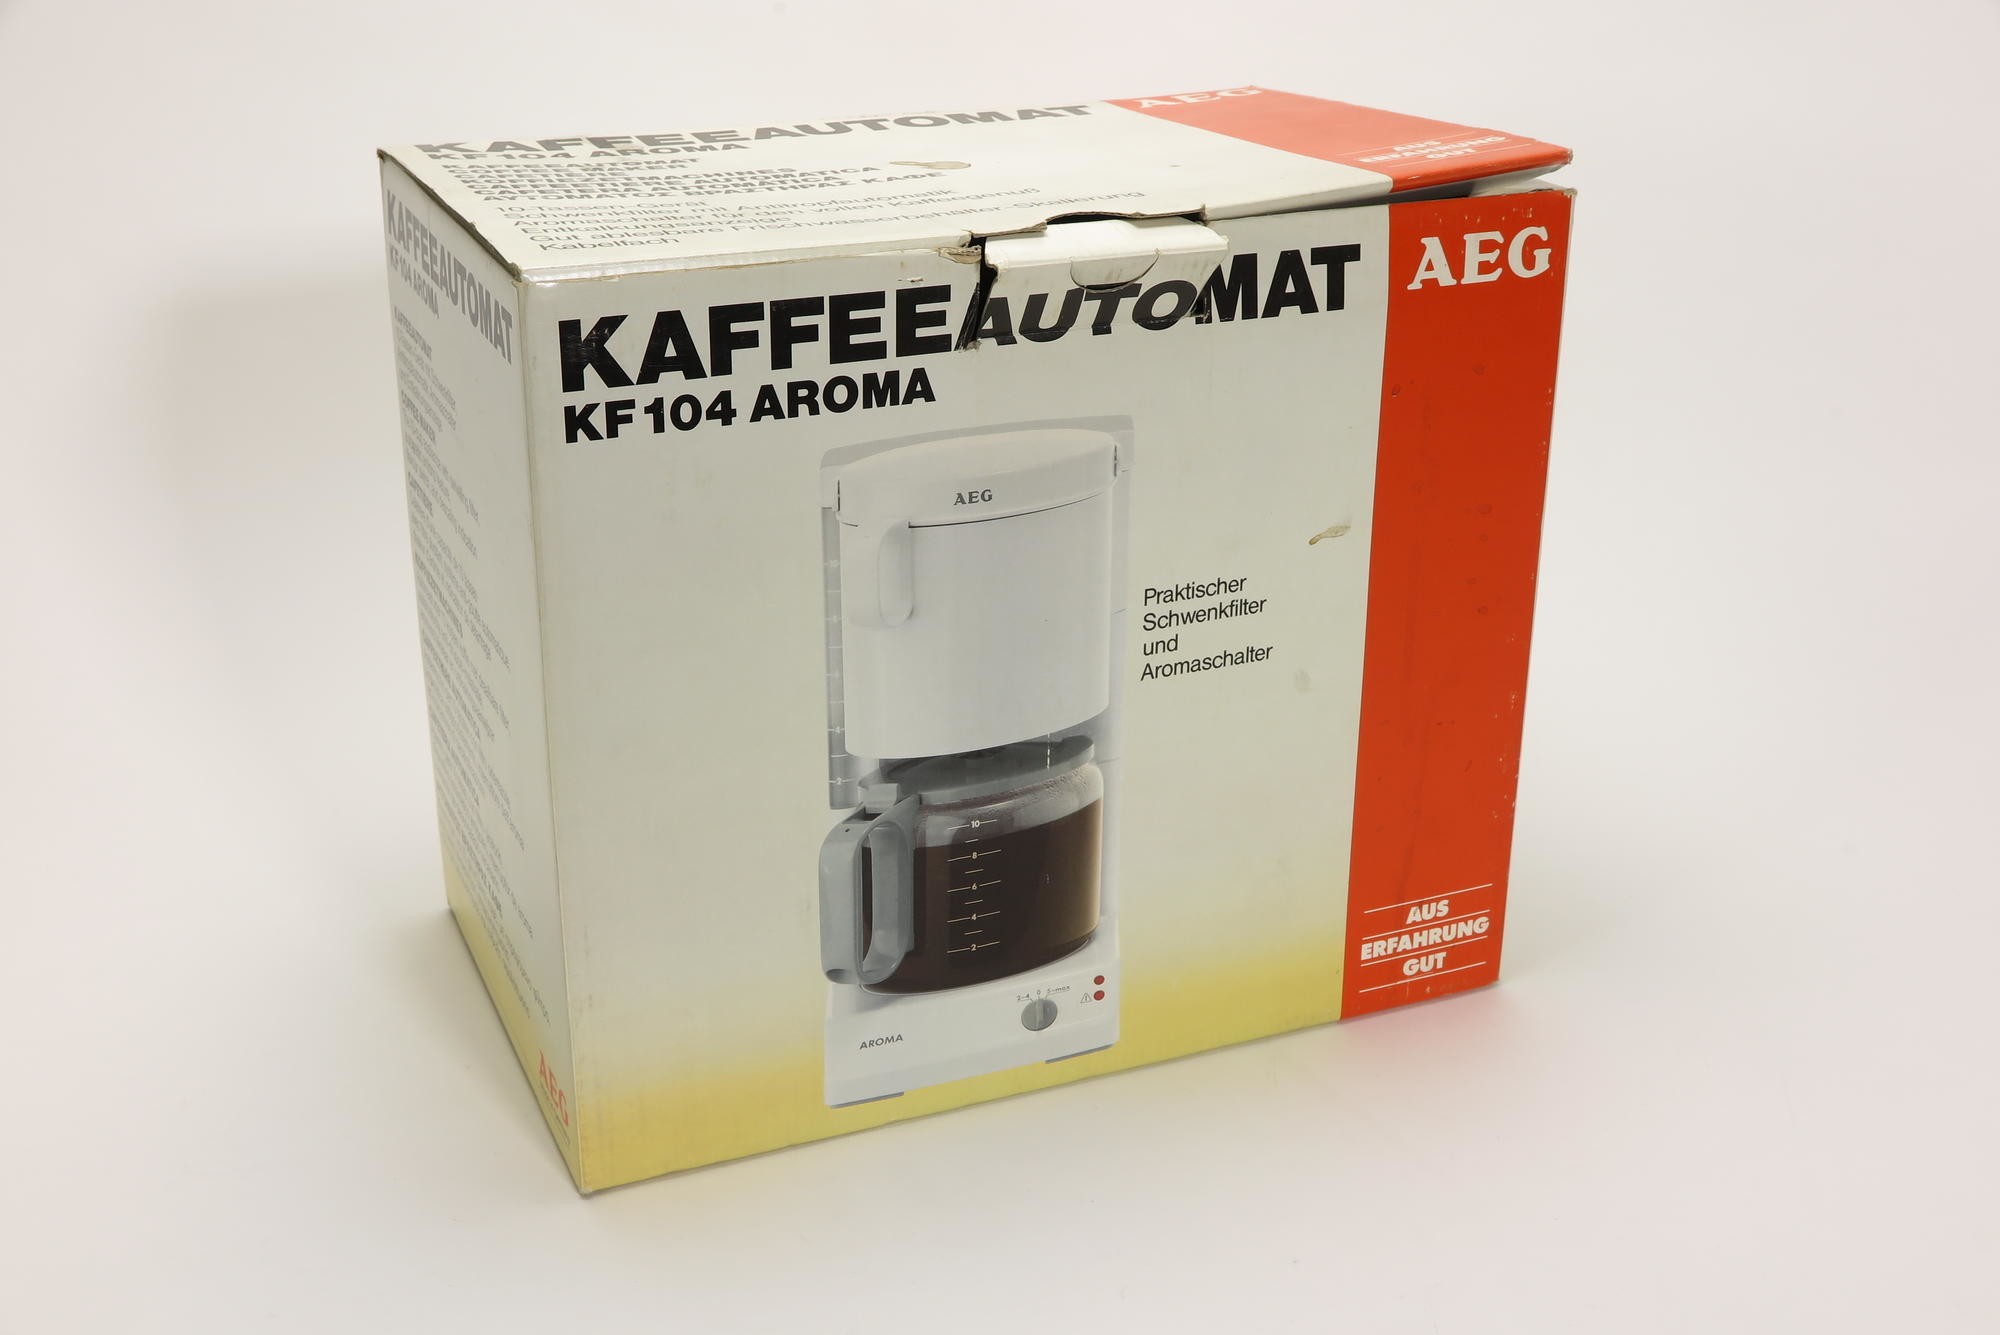 Verpackungskarton, Zubehör zu Elektrischer Kaffeeautomat für Filterkaffee AEG Typ E WK 0068 Modell KF 104 Aroma (Stiftung Deutsches Technikmuseum Berlin CC0)